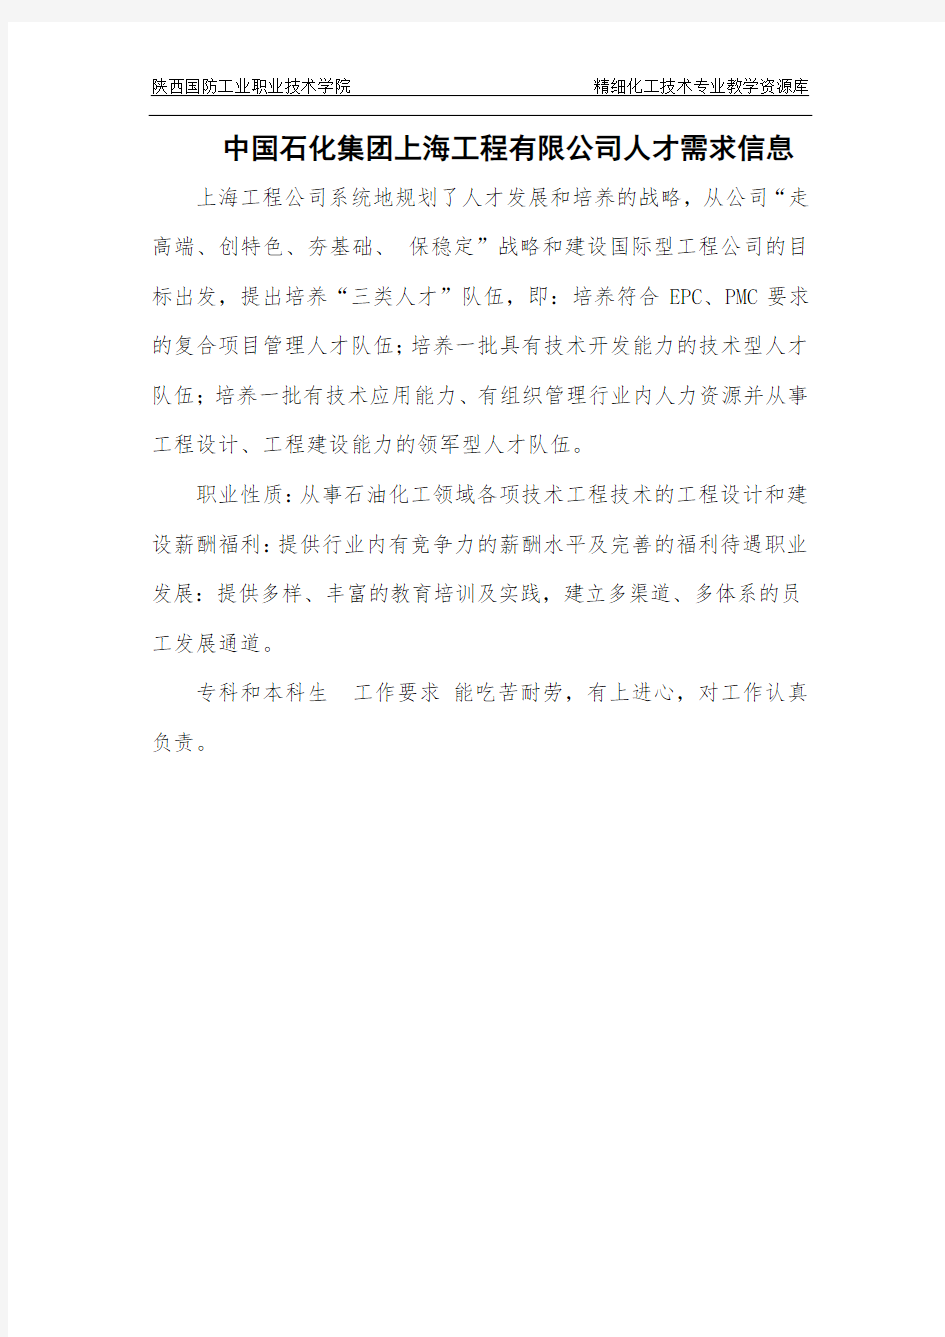 中国石化集团上海工程有限公司人才需求信息